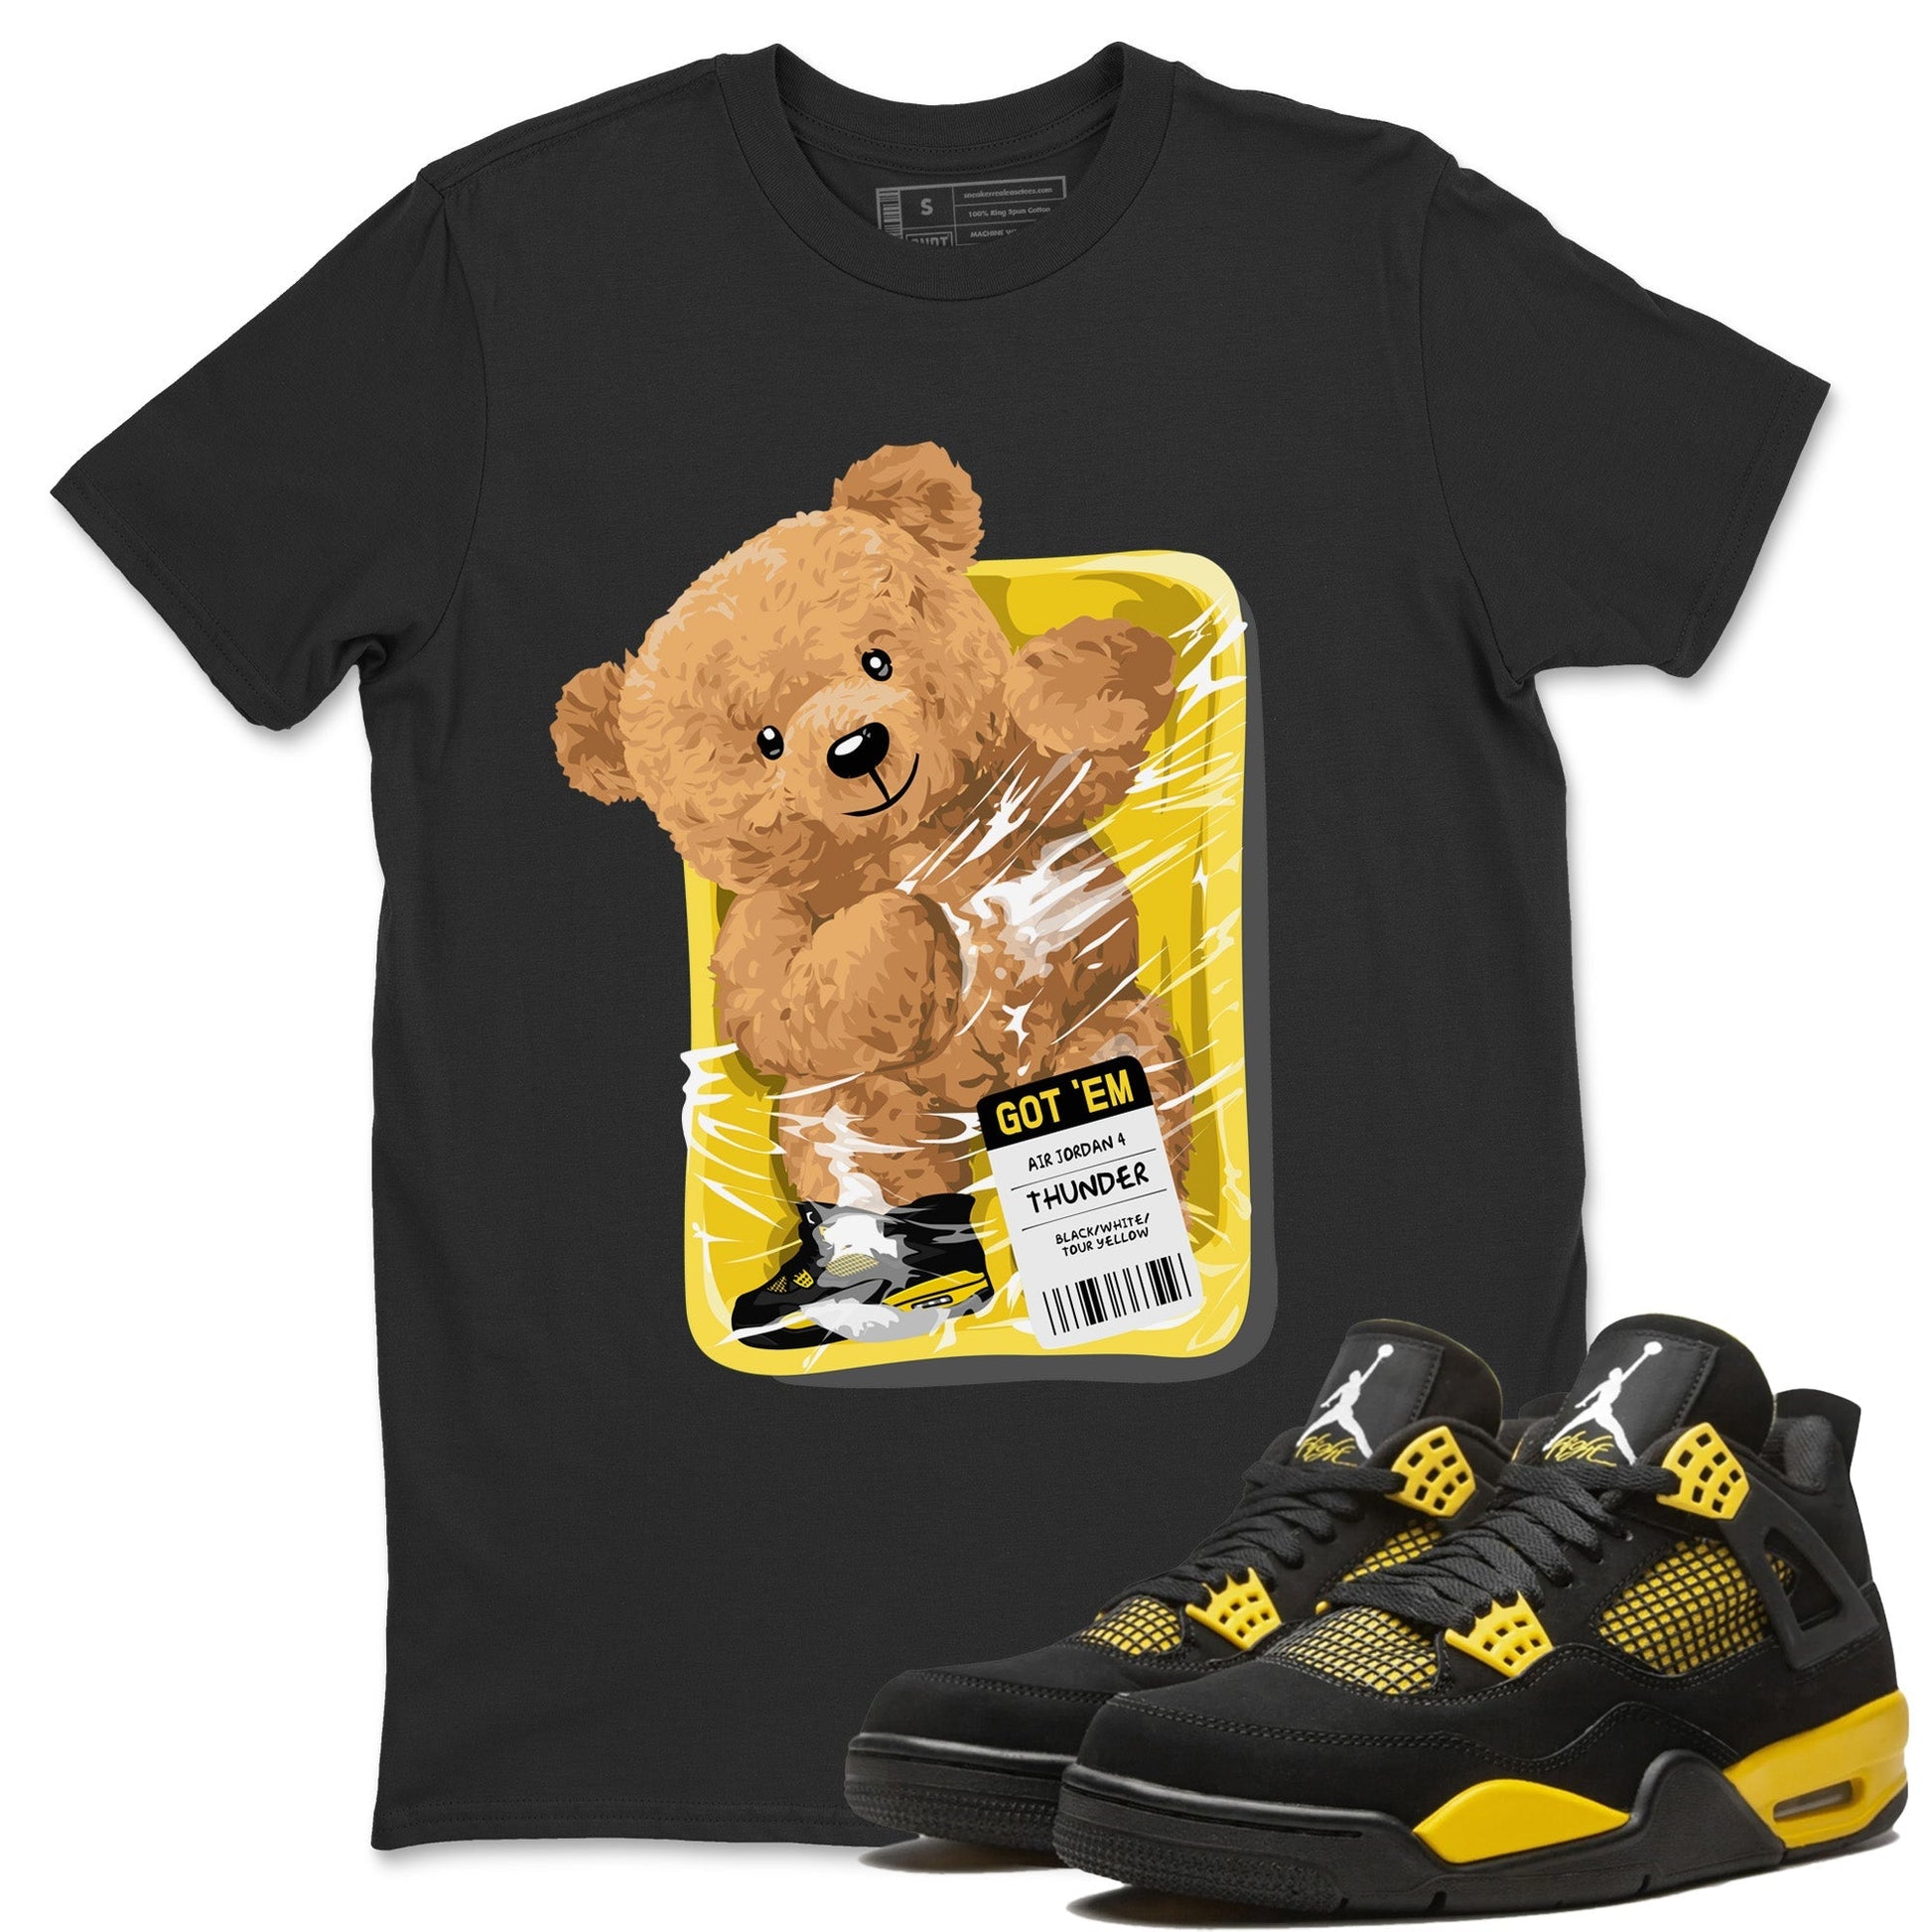 Air Jordan 4 Thunder Sneaker Match Tees Packaged Bear Streetwear Sneaker Shirt Air Jordan 4 Retro Thunder Sneaker Release Tees Unisex Shirts Black 1